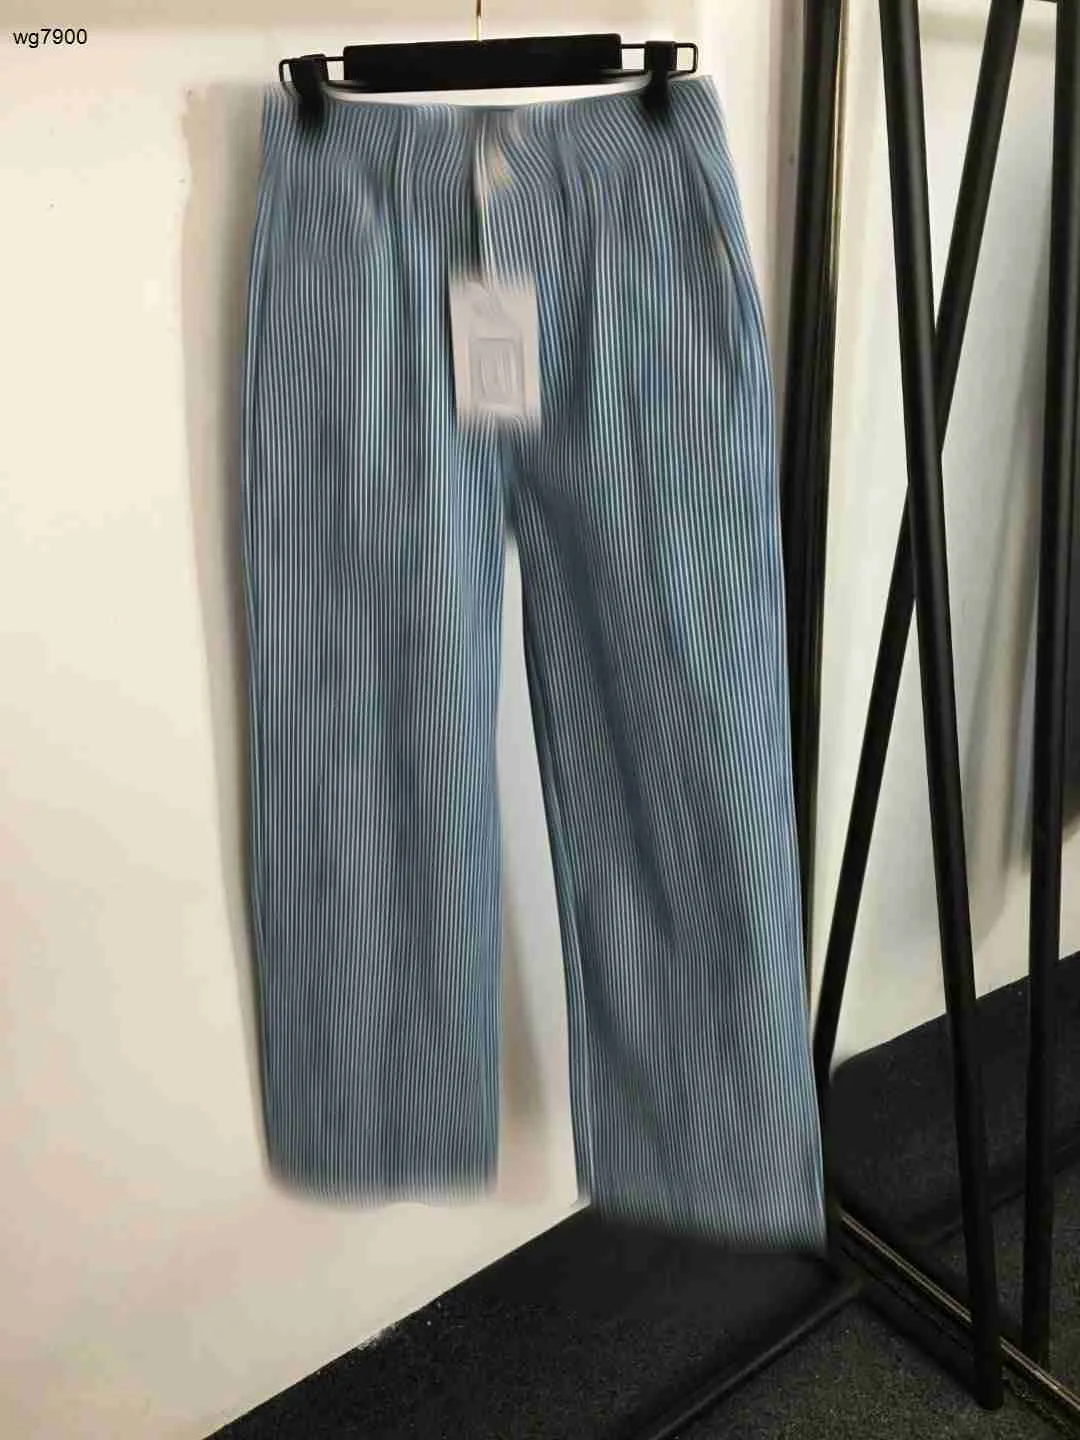 مصممة النساء جينز سراويل ملابس السيدات سراويل جودة مغطاة بنطلون الدنيم الاستقصائي في التطريز 07 ديسمبر